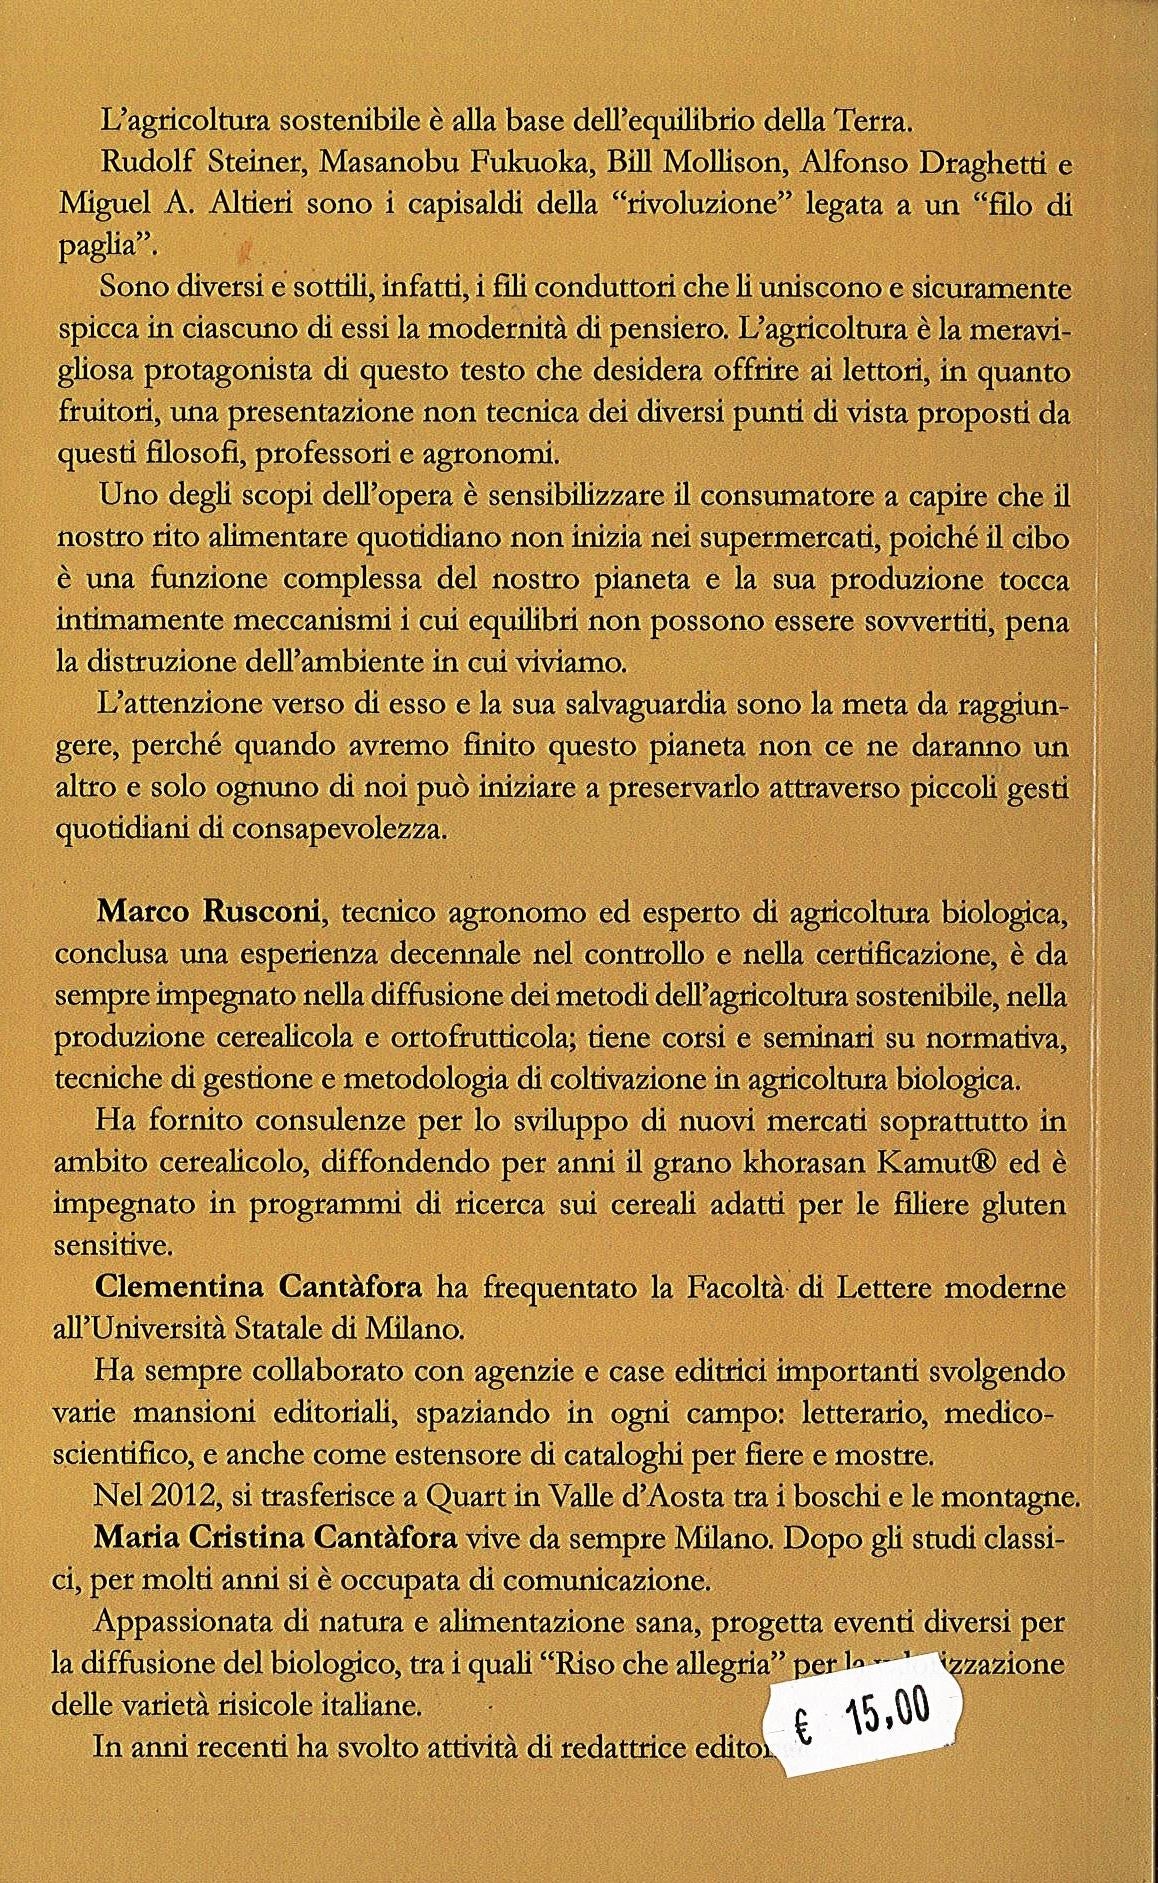 L' EQUILIBRIO DELLA TERRA - M. Rusconi, M. Cristina, C. Cantàfora